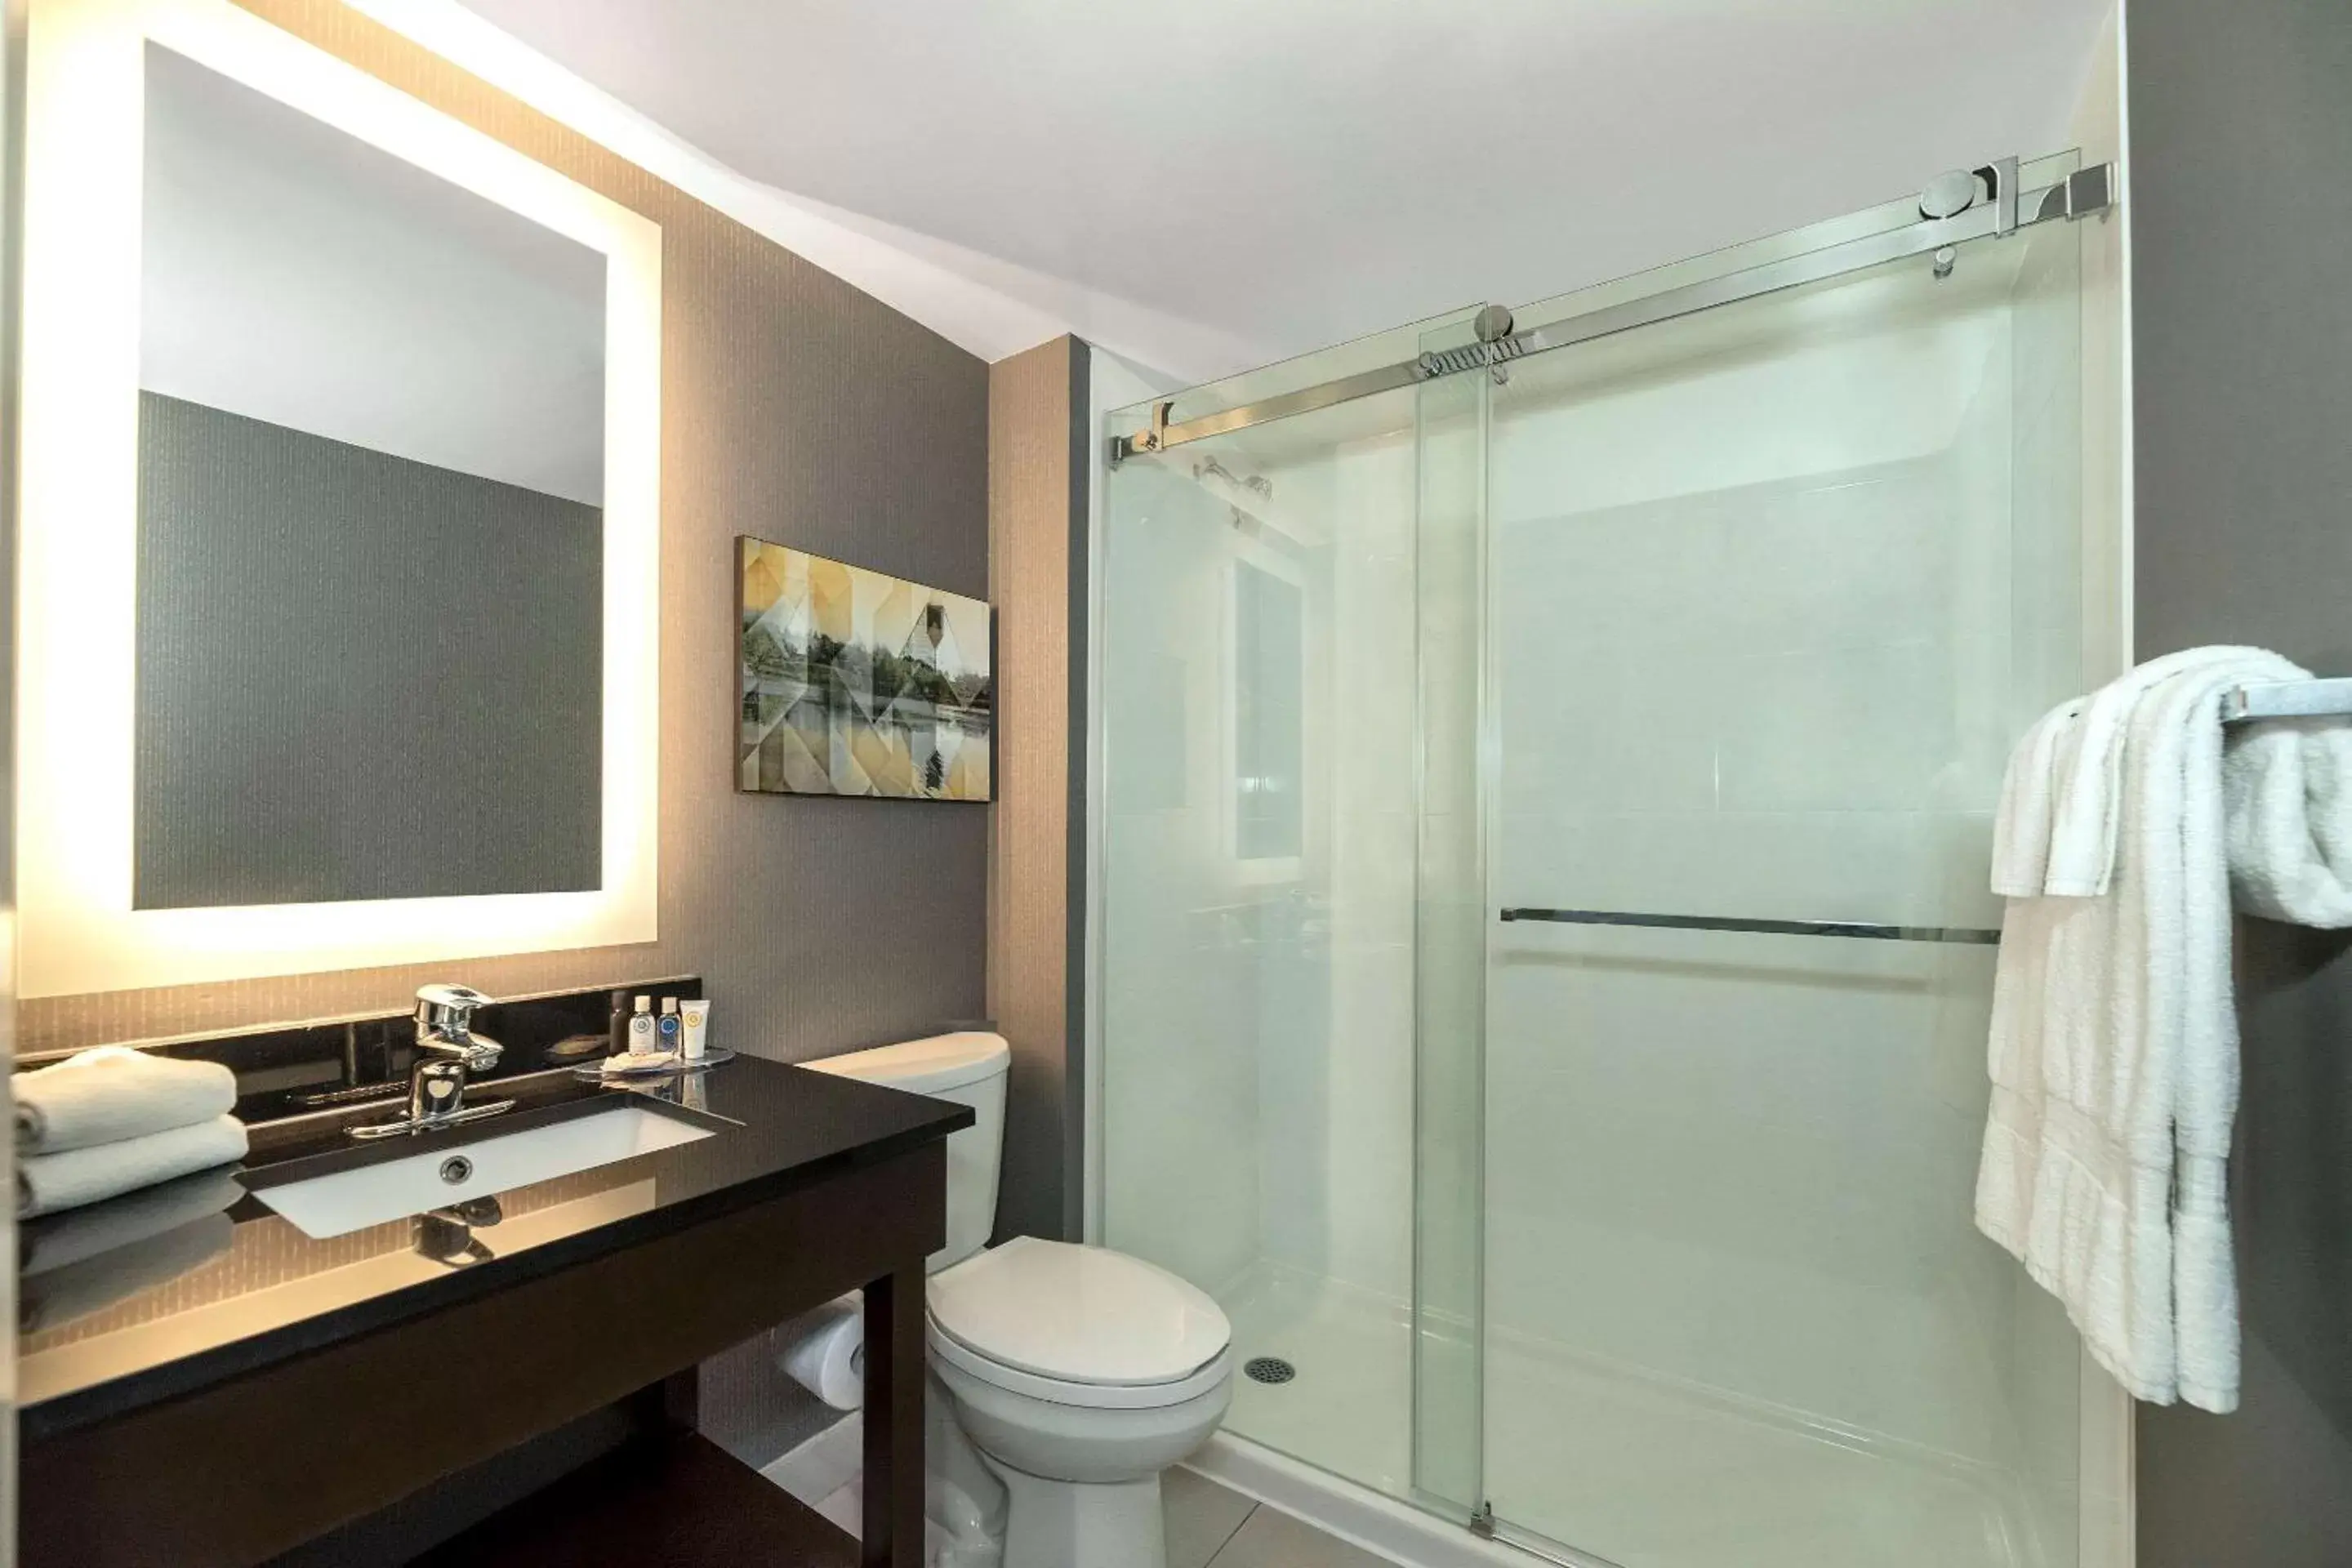 Bedroom, Bathroom in Comfort Inn Brossard